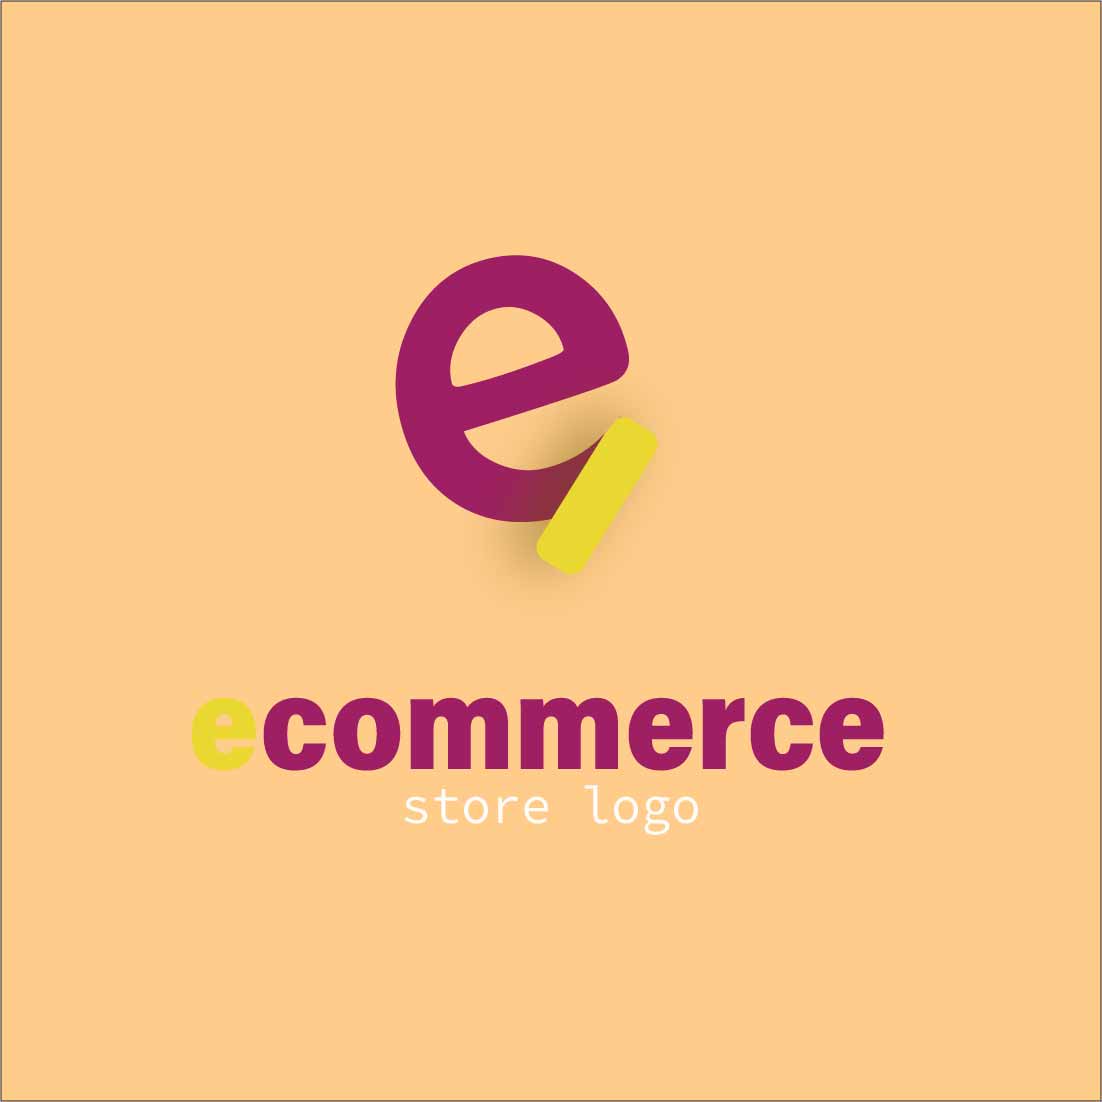 ecommerce logo 1 871